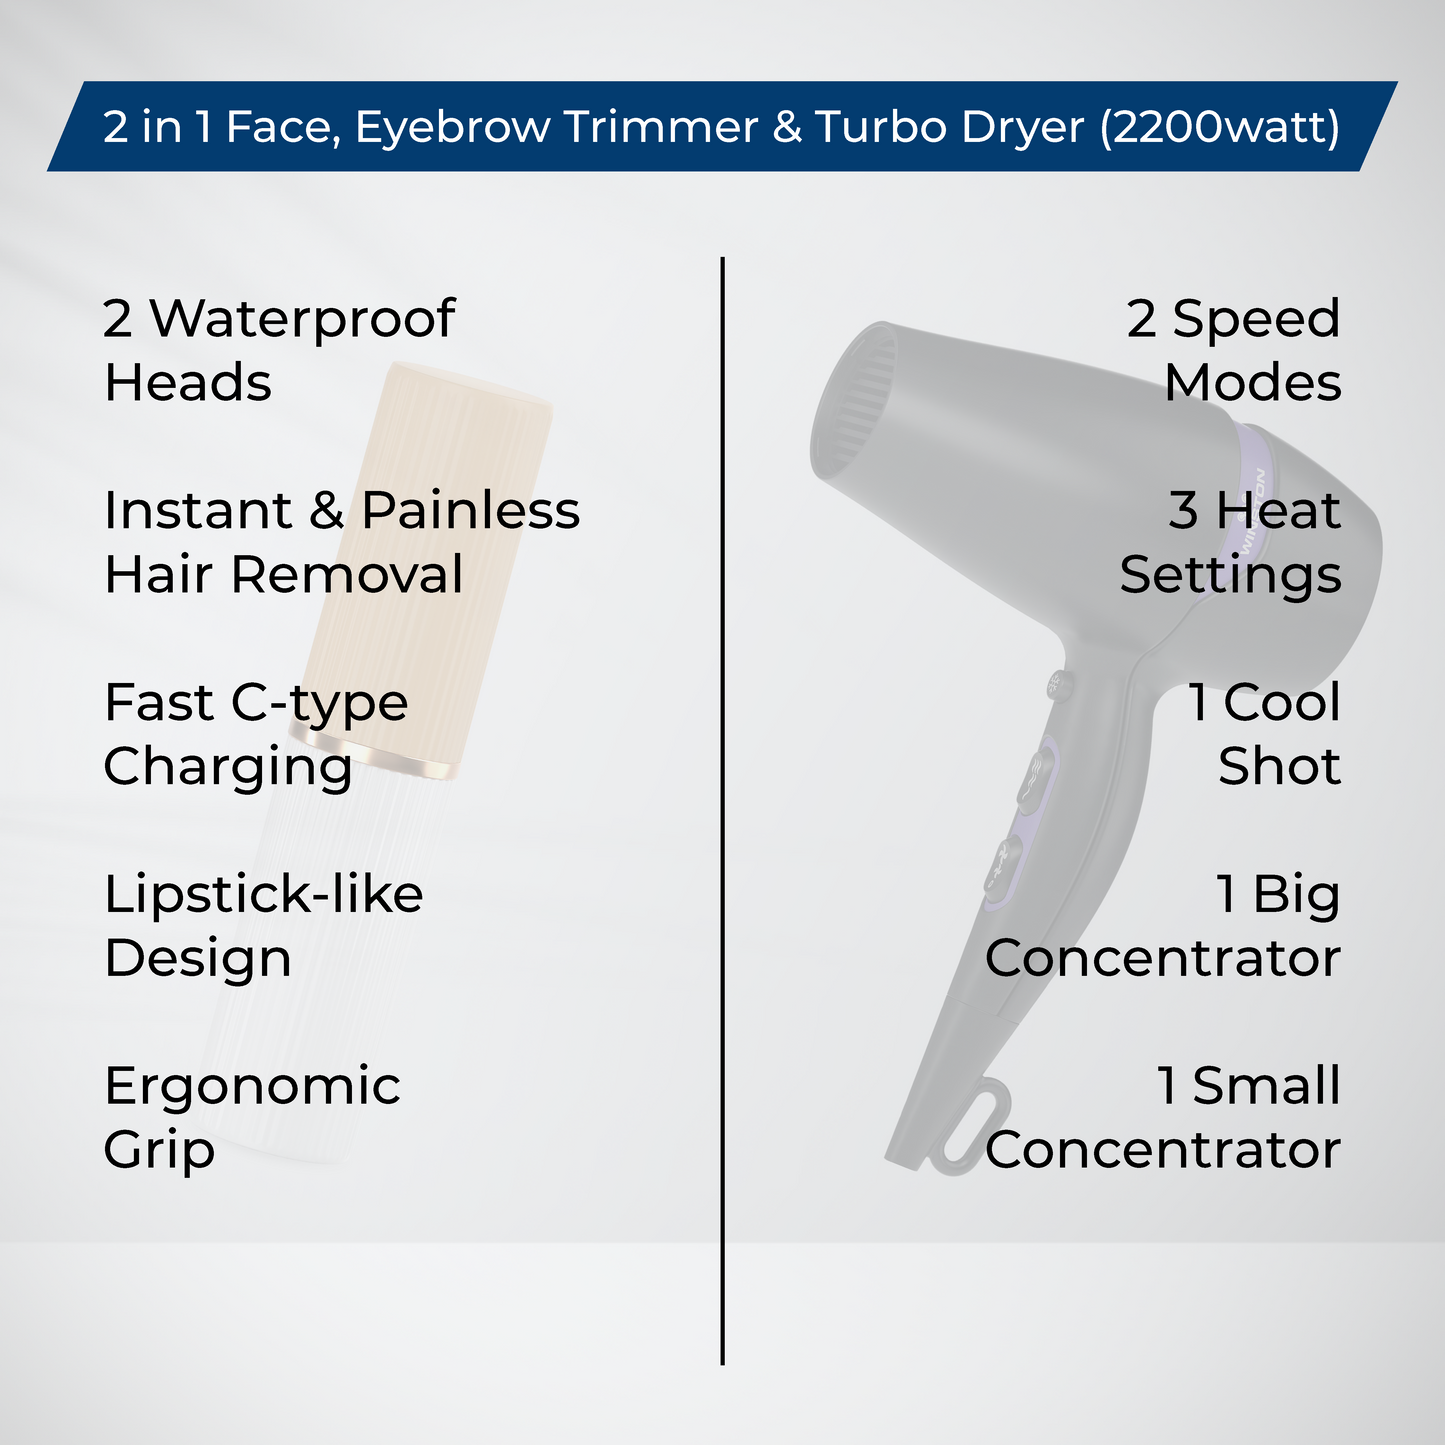 2 in 1 Face, Eyebrow Trimmer & Turbo Dryer (2200watt) Combo